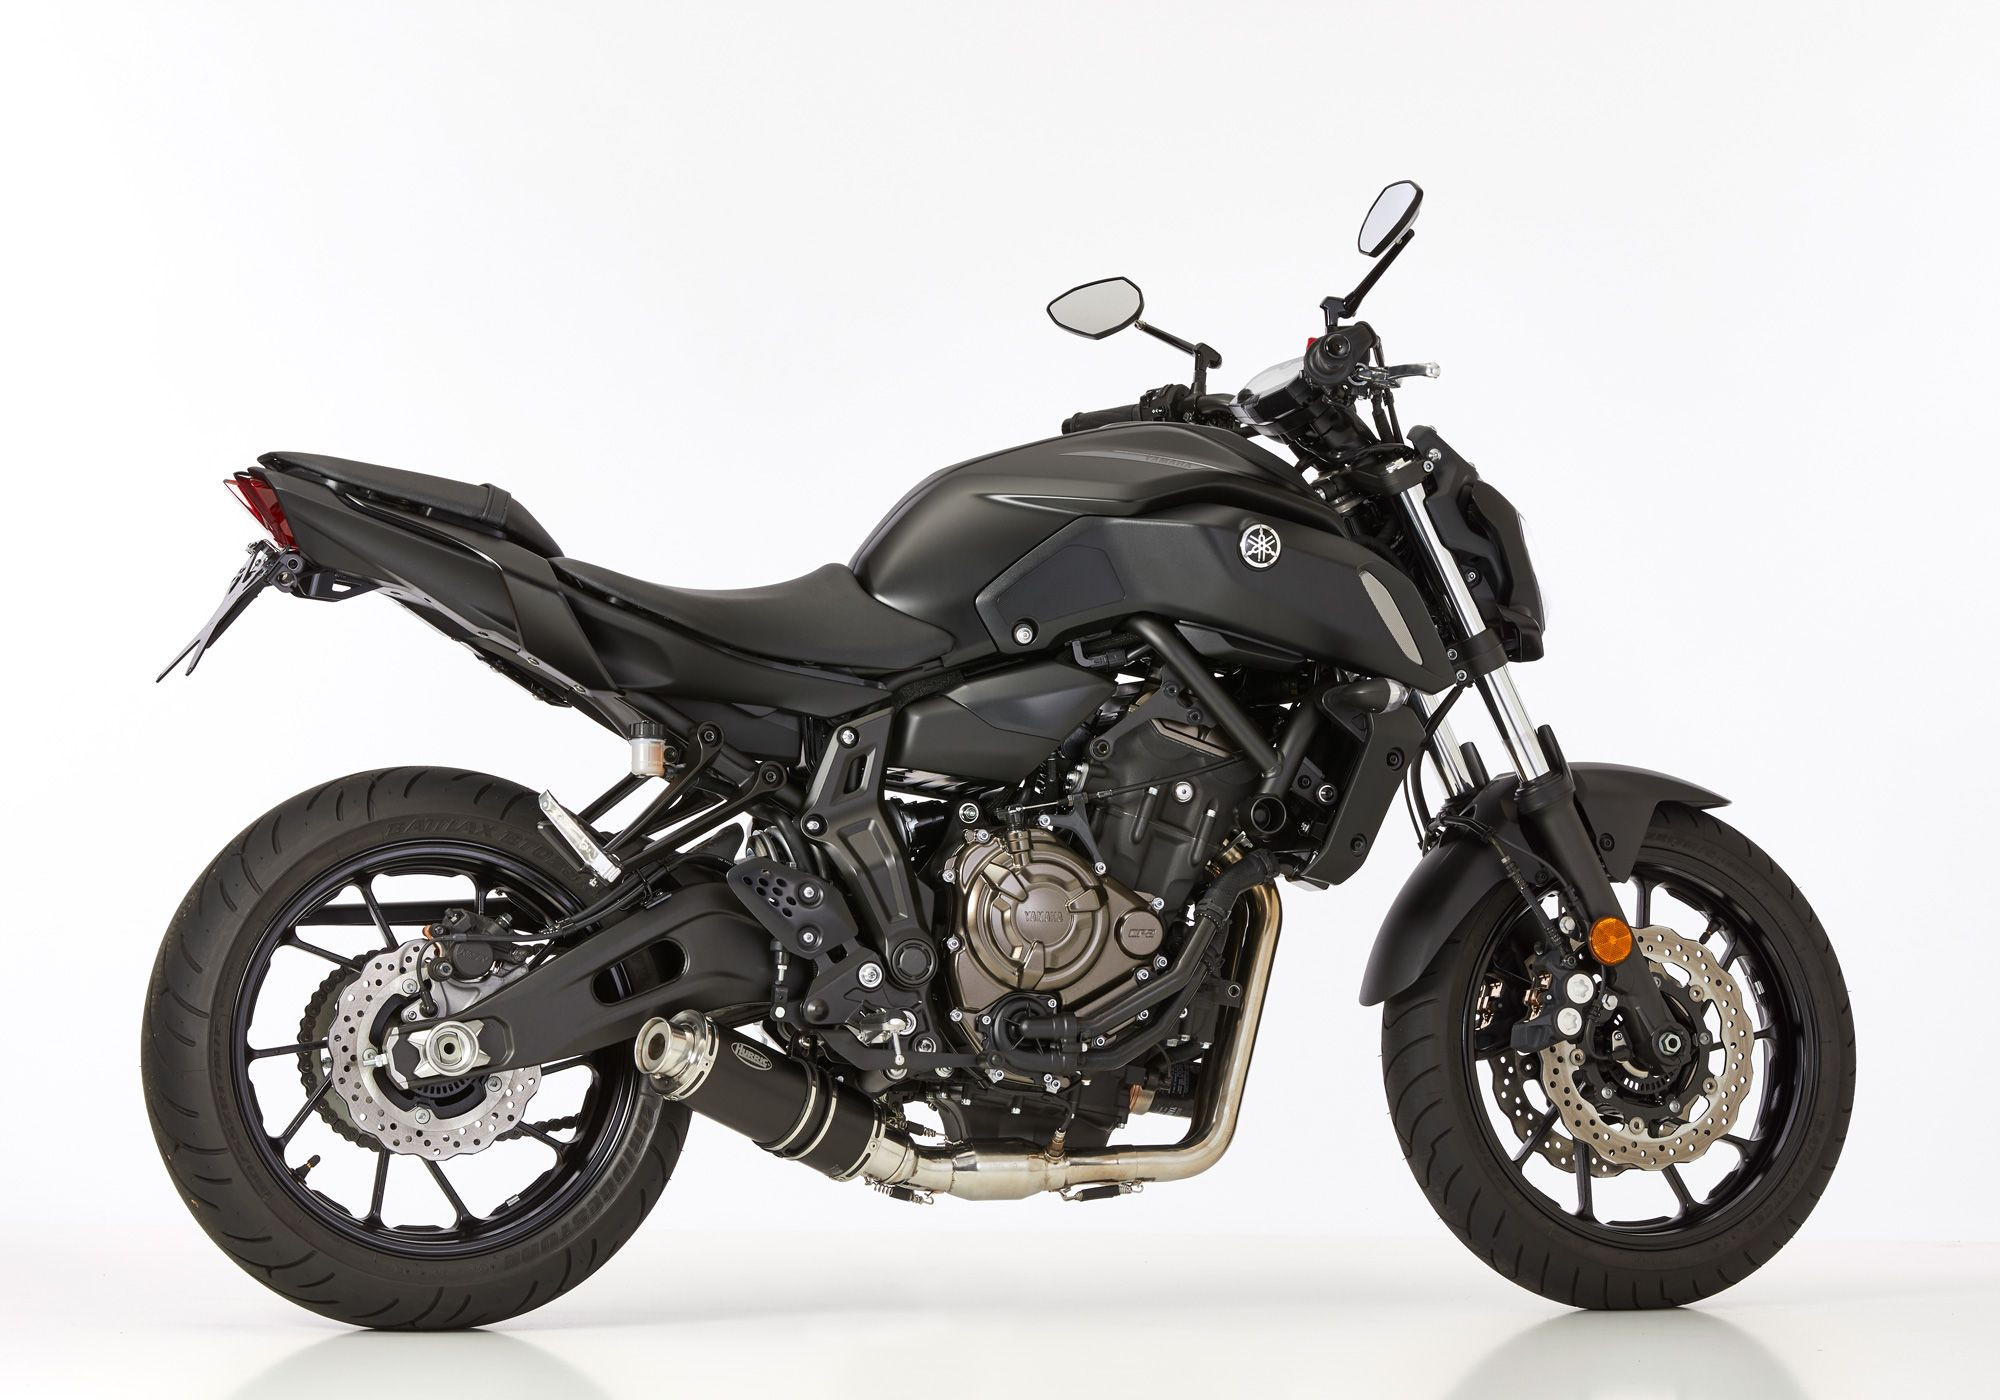 HURRIC Supersport Auspuffanlage Short schwarz EG-BE passt für Yamaha MT-07 Motocage, Tracer 700, XSR700